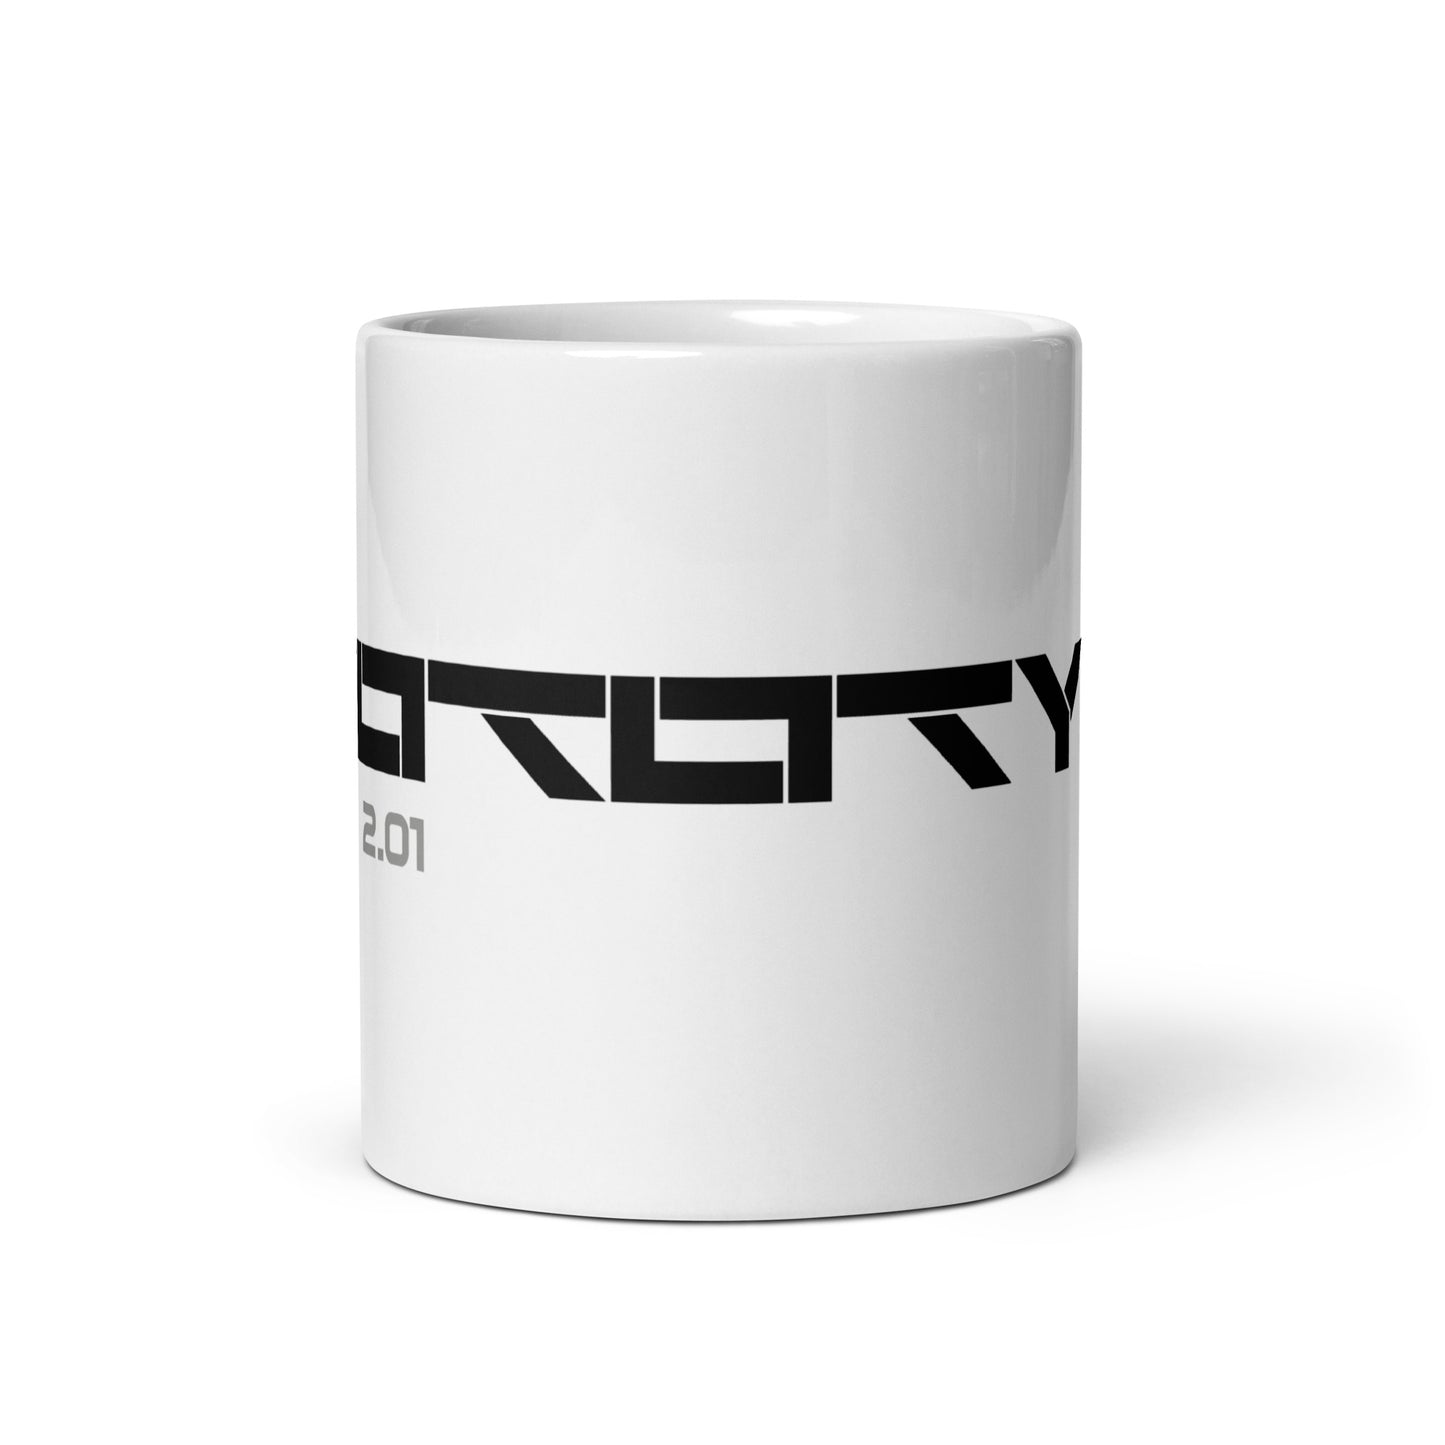 Prototype (v2) White glossy mug